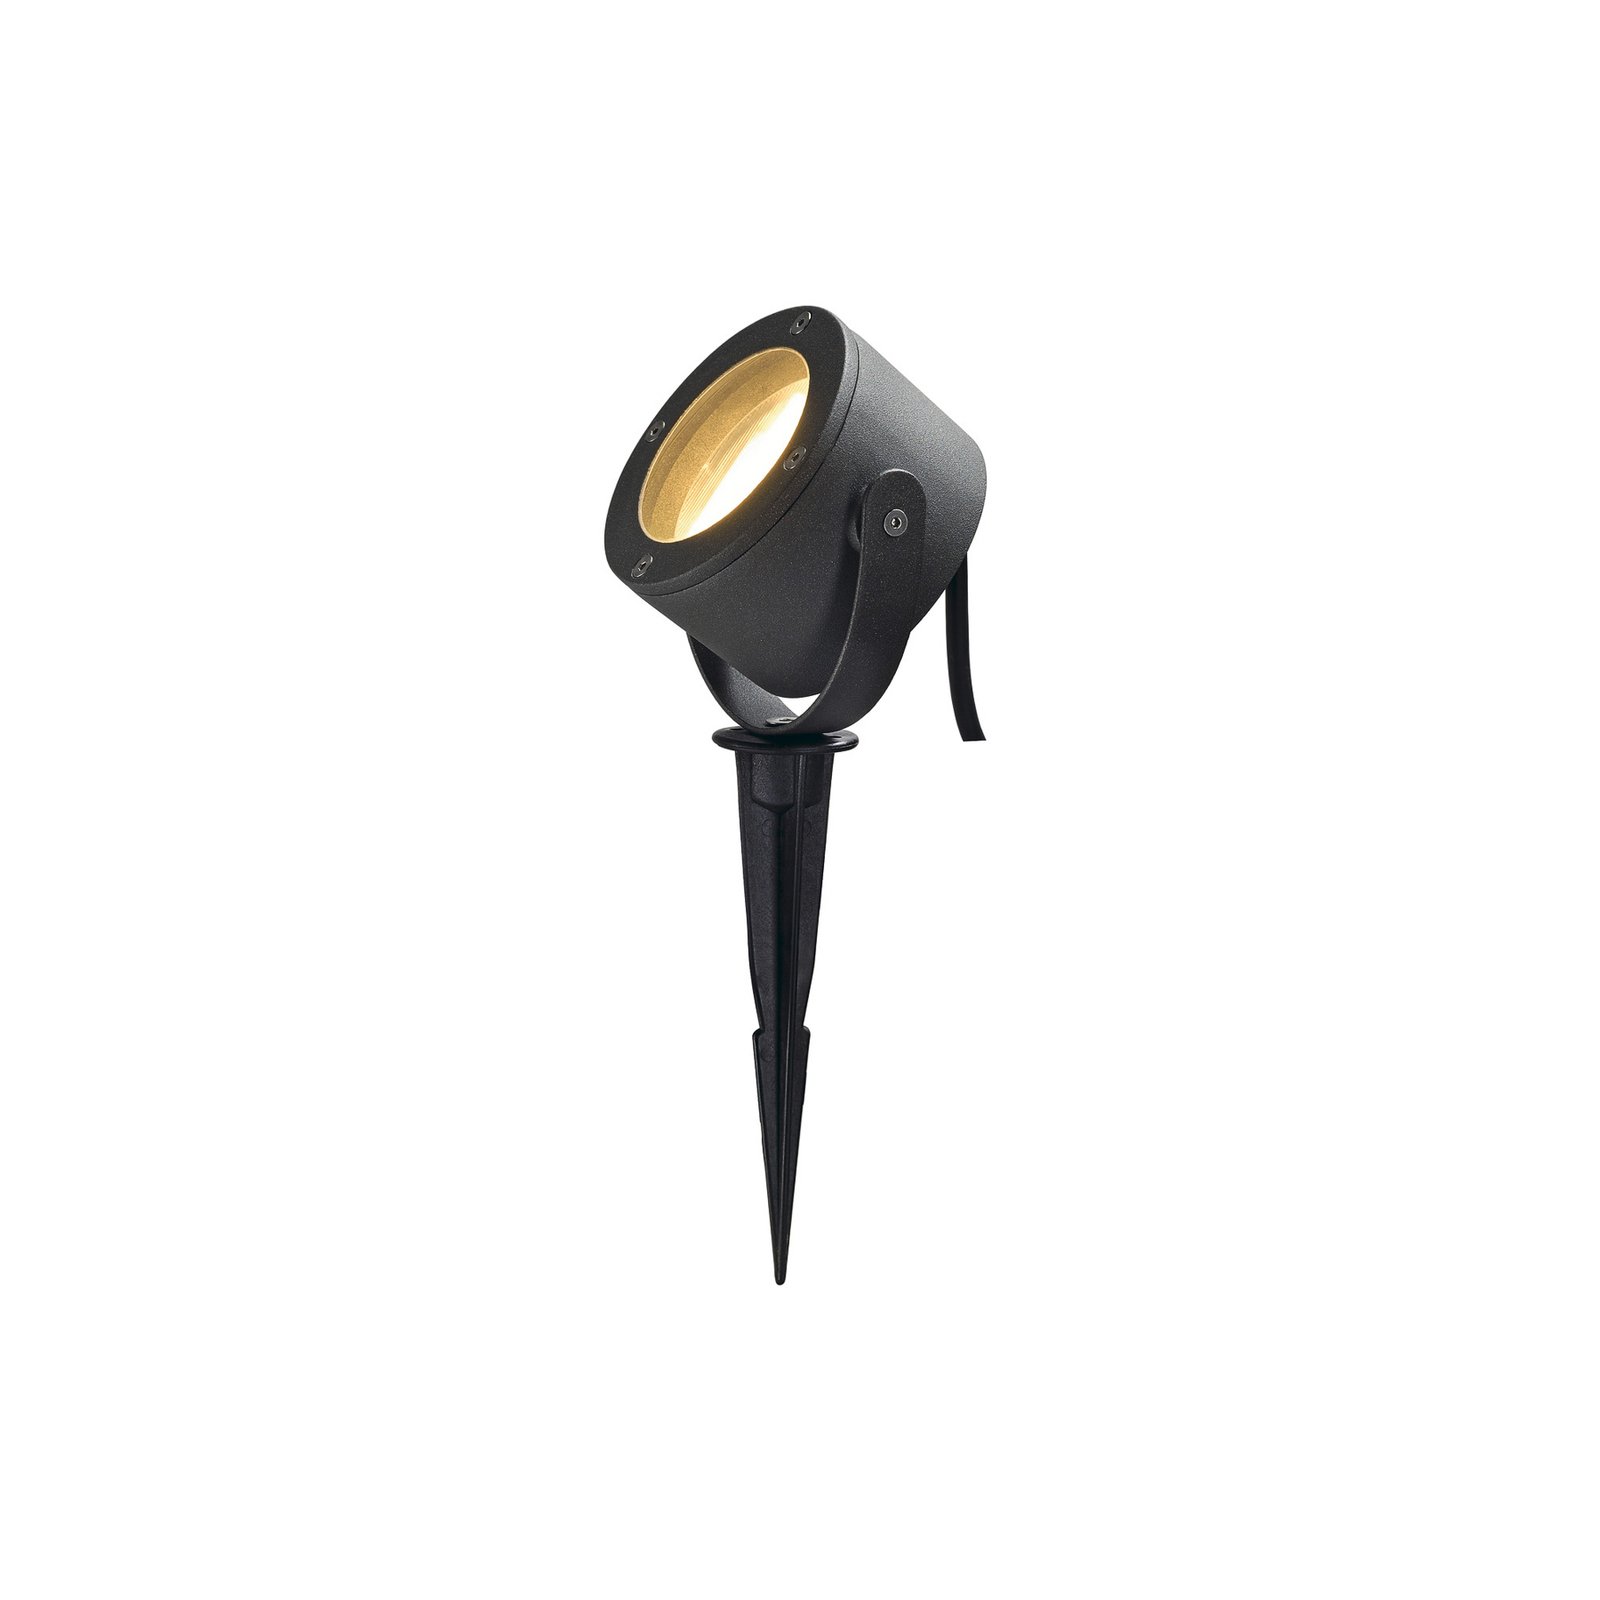 SLV Sitra markspettspotlight, antracit, aluminium, höjd 12 cm